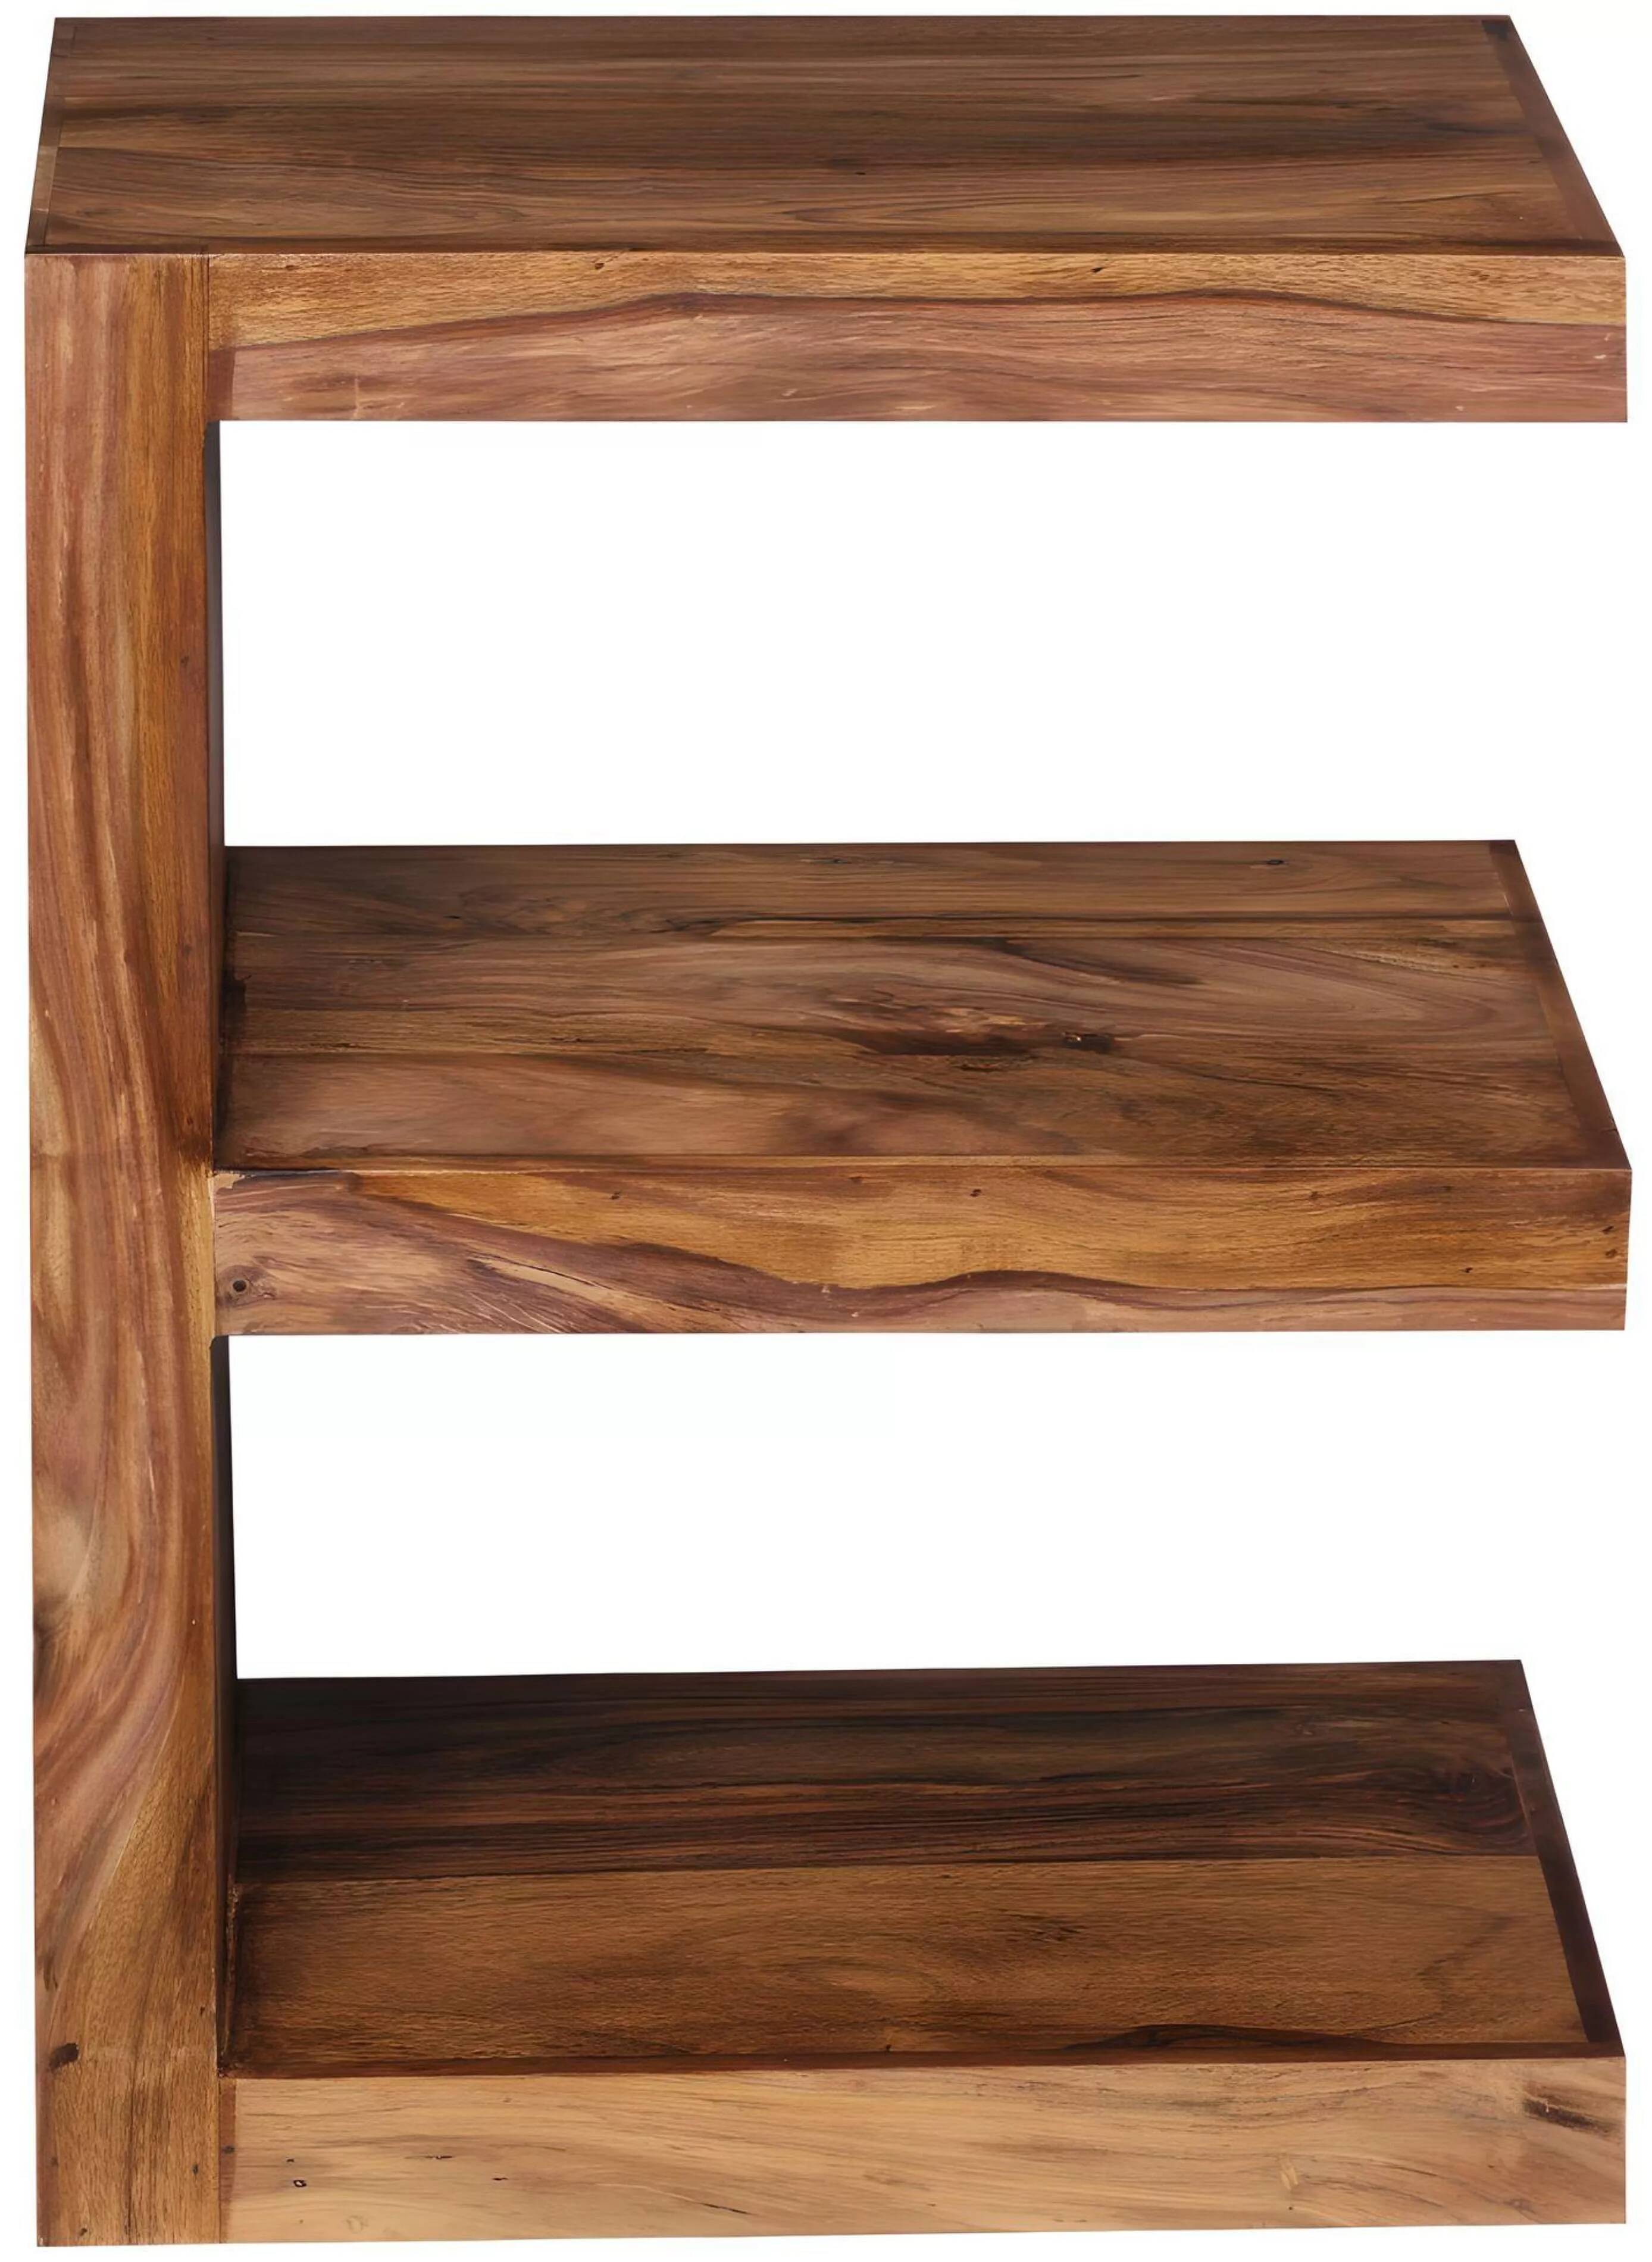 Table d'appoint en bois massif sheesham